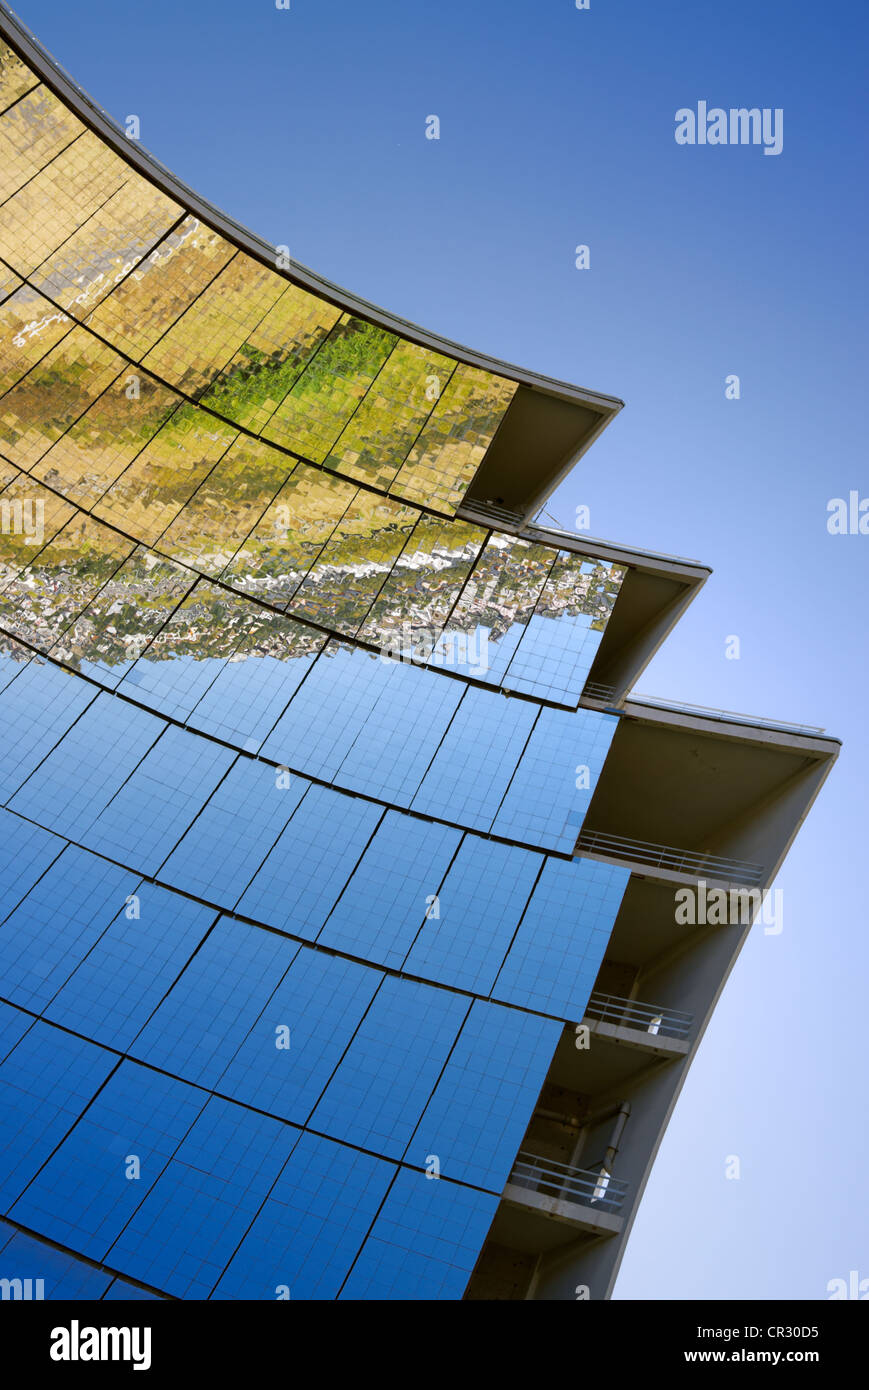 Solar-Ofen, le Grand vier Solaire d'Odeillo 1000 kW Heizkraftwerk, Detailansicht der Parabolspiegel Stockfoto